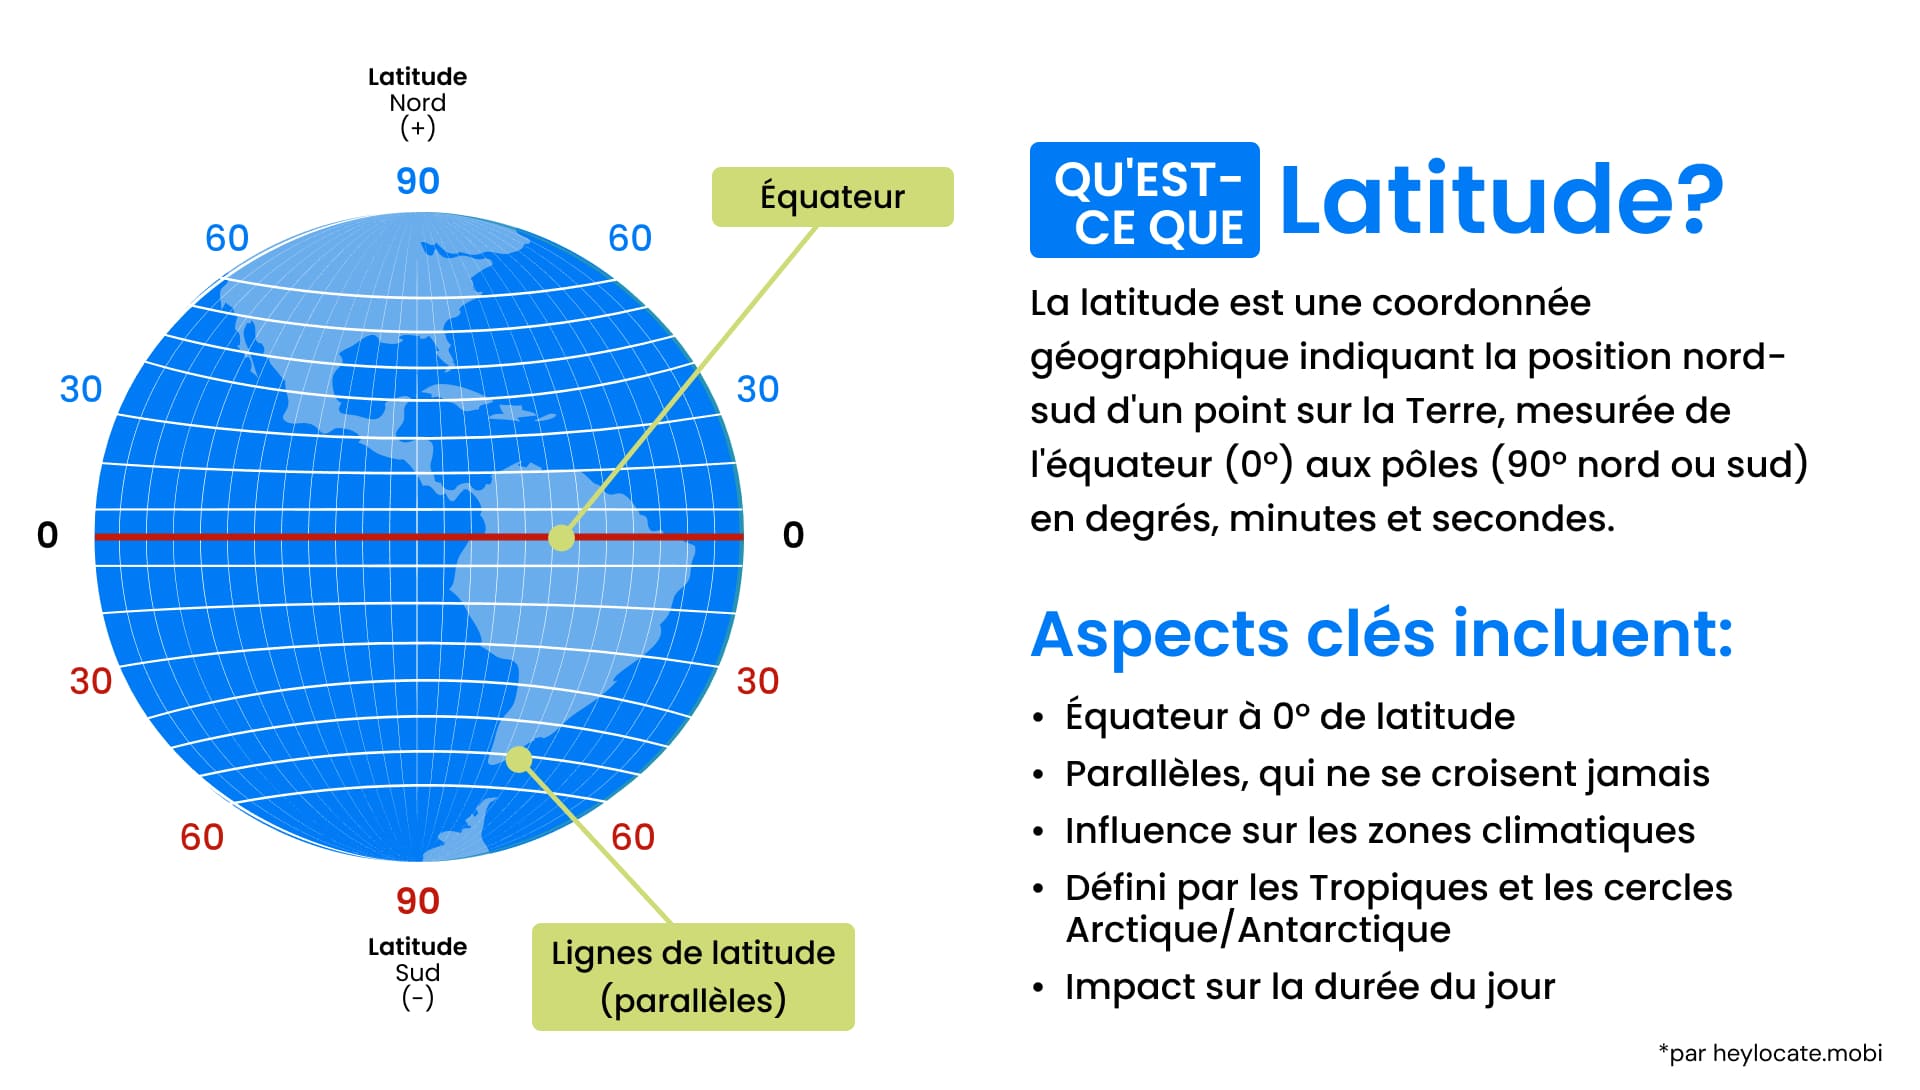 La latitude : Un guide pour comprendre les lignes de latitude de la Terre : définition, représentation schématique du globe avec la latitude, et aspects clés de la latitude.